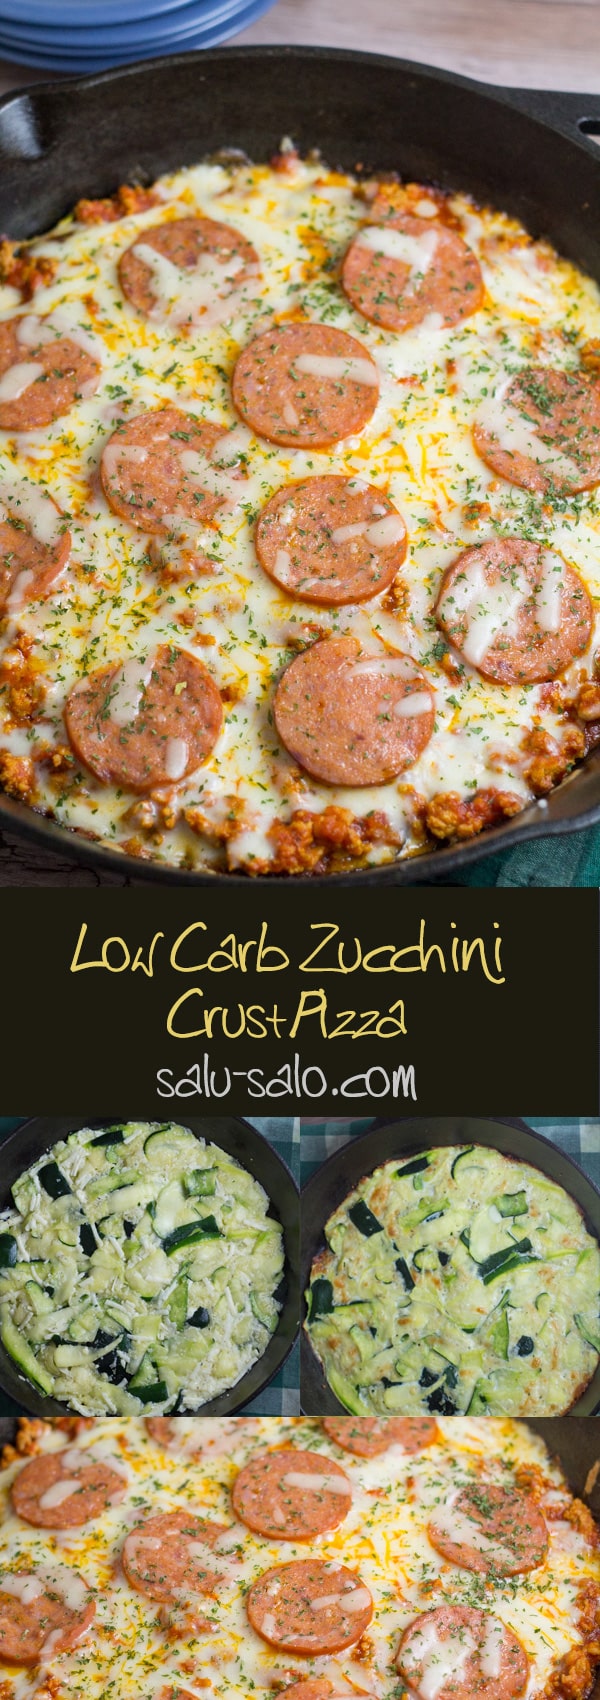 Low Carb Zucchini Crust Pizza